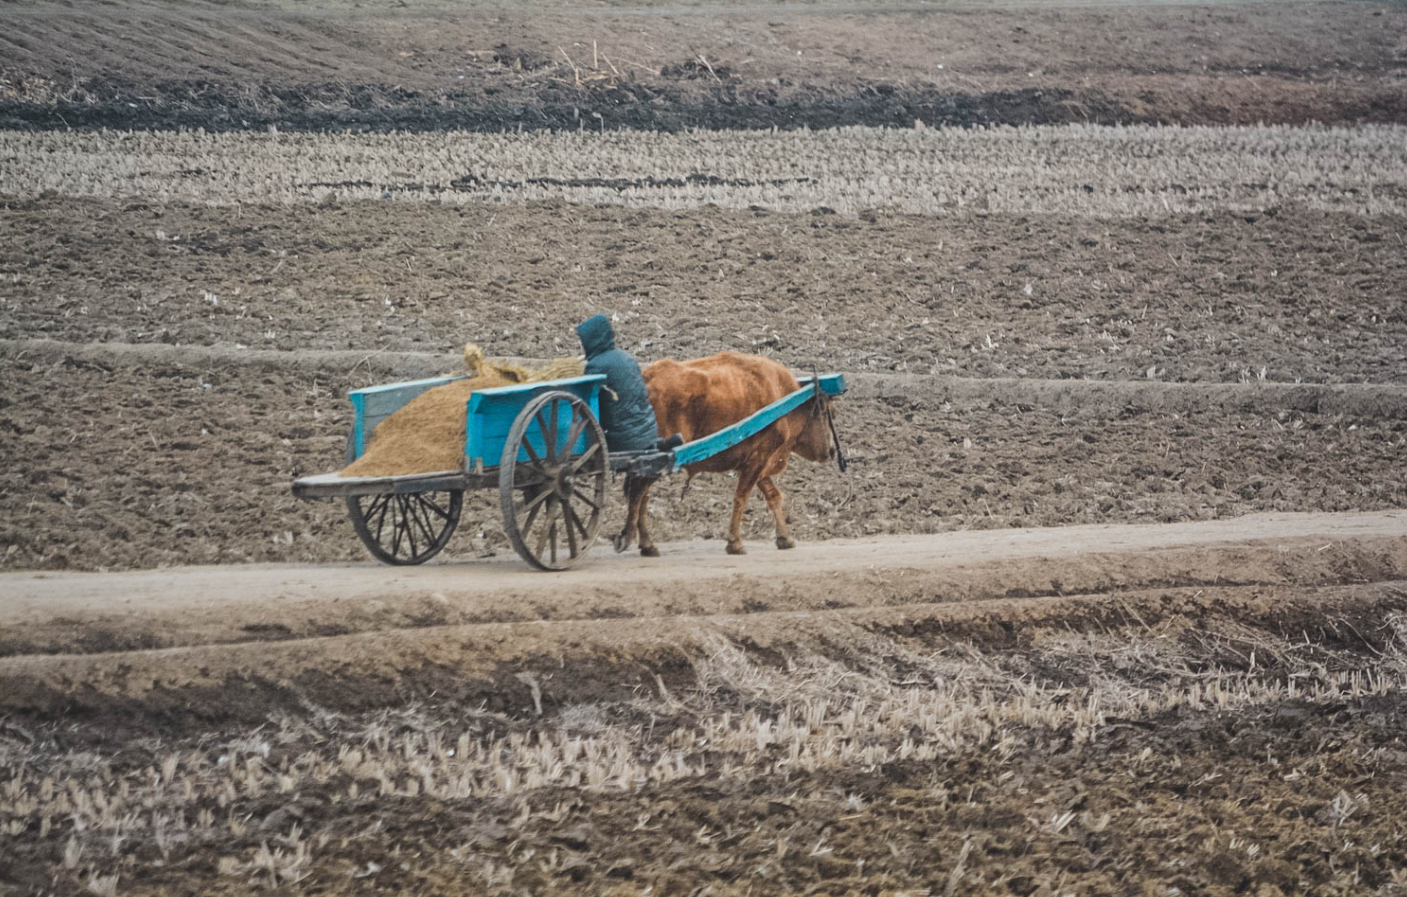 图为朝鲜农村地区的牛车,拉着一车黄沙,一名男子坐在车上